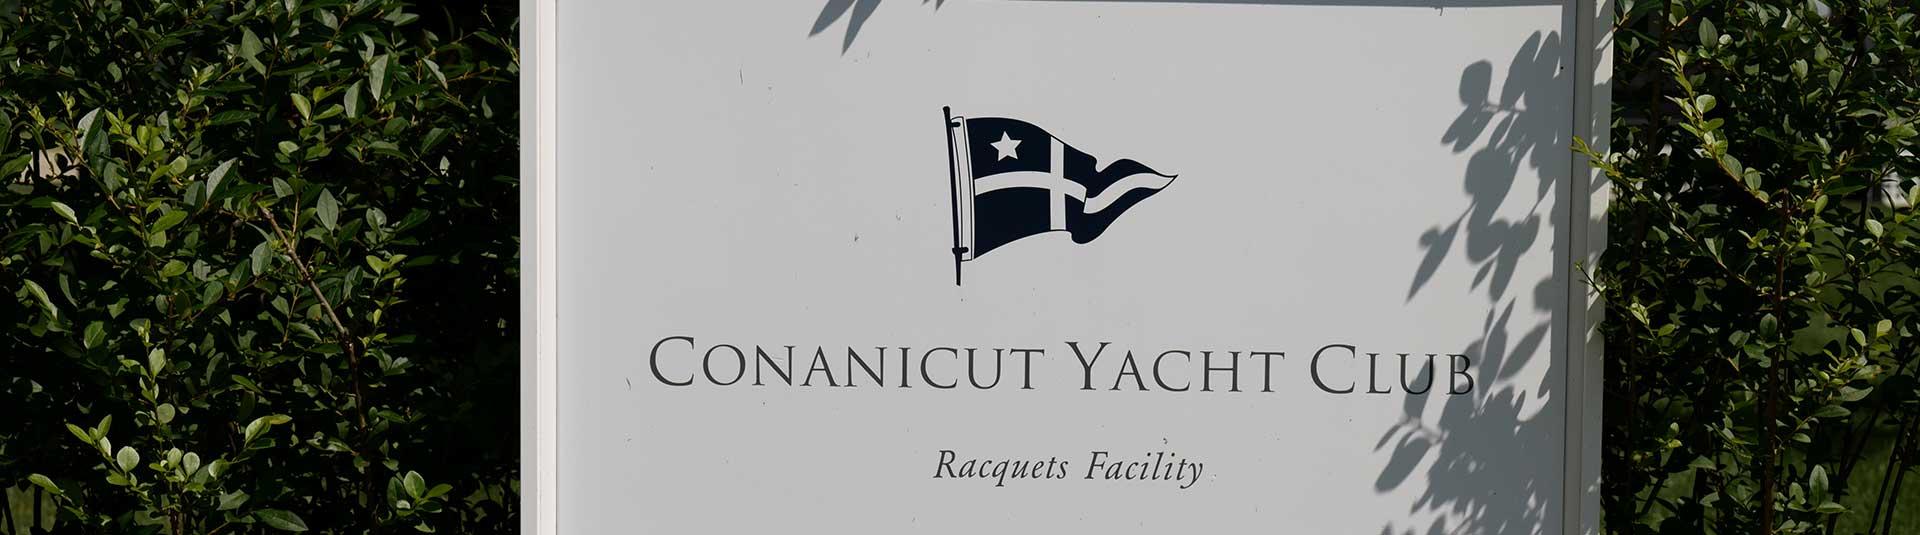 conanicut yacht club tennis